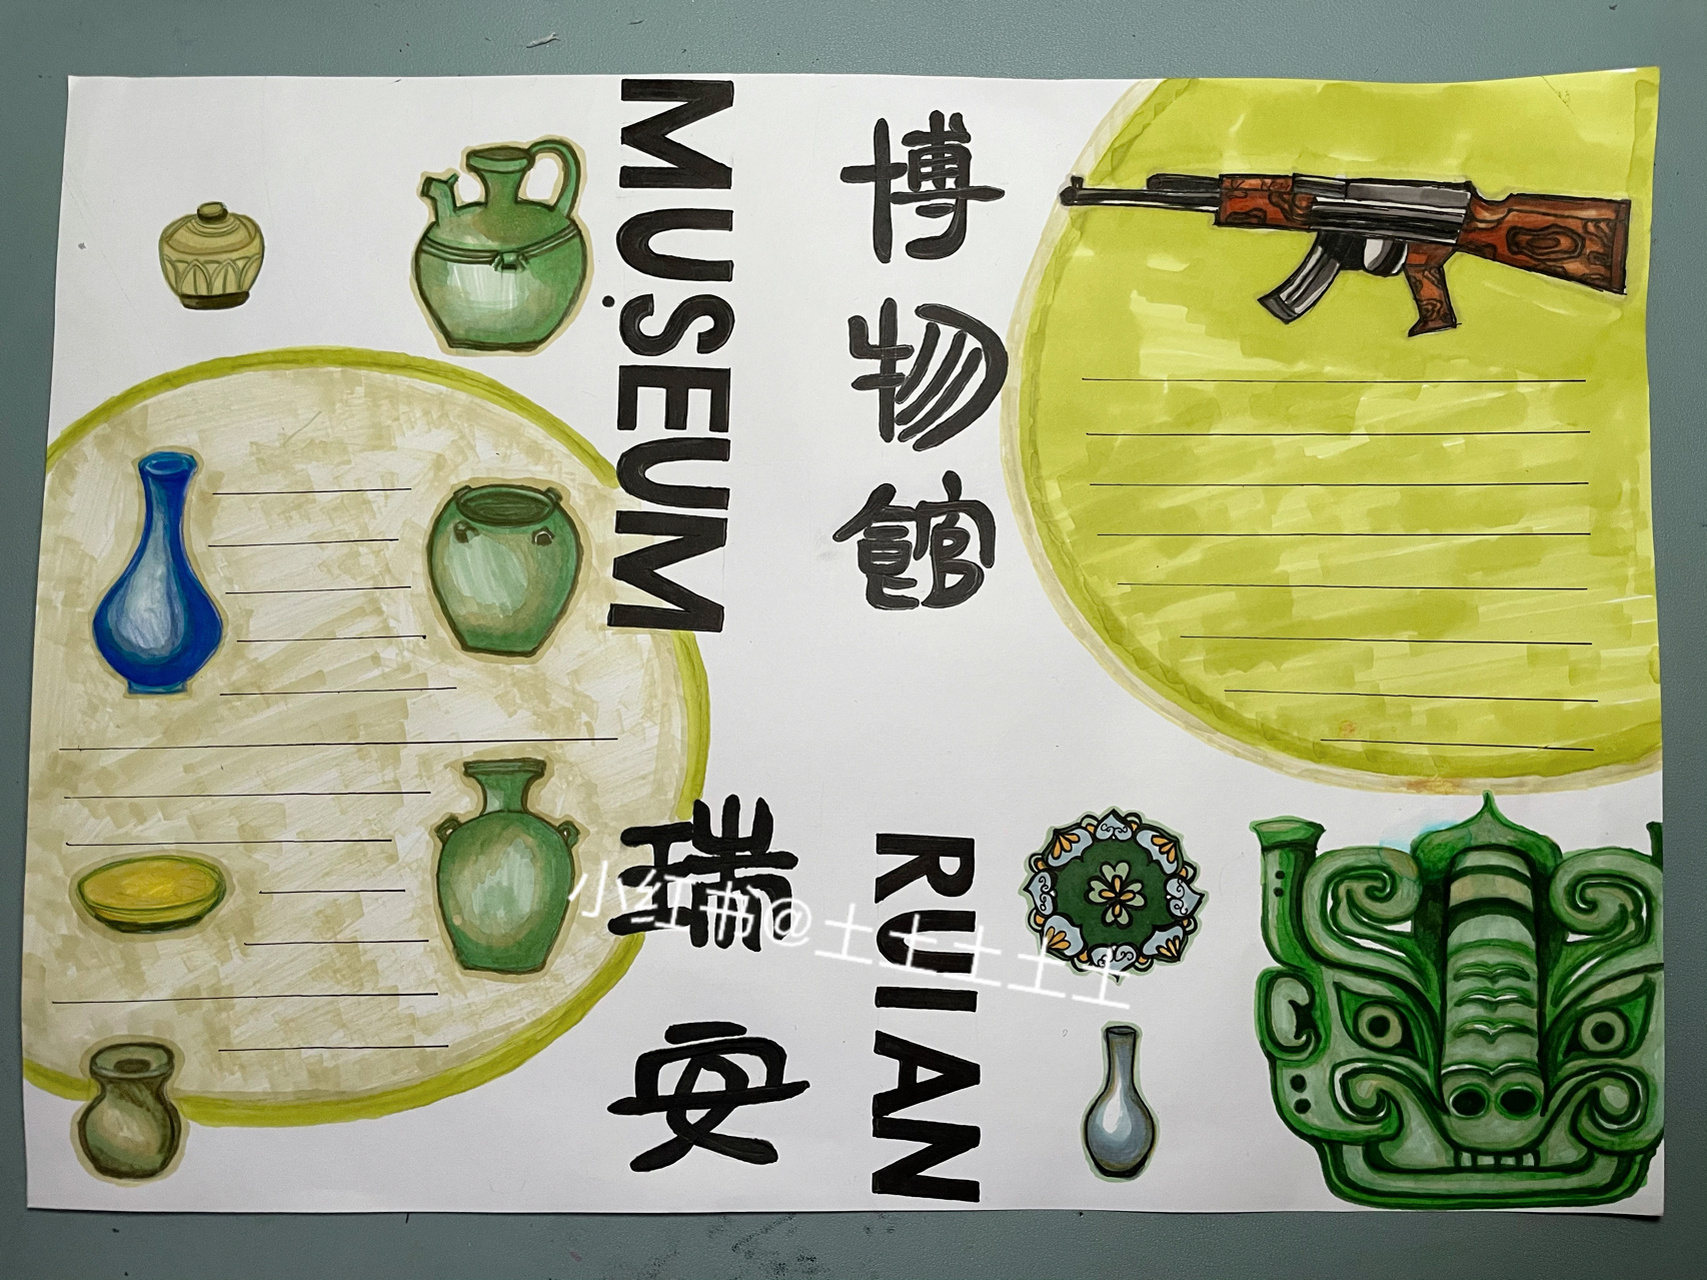 上海历史博物馆小报图片